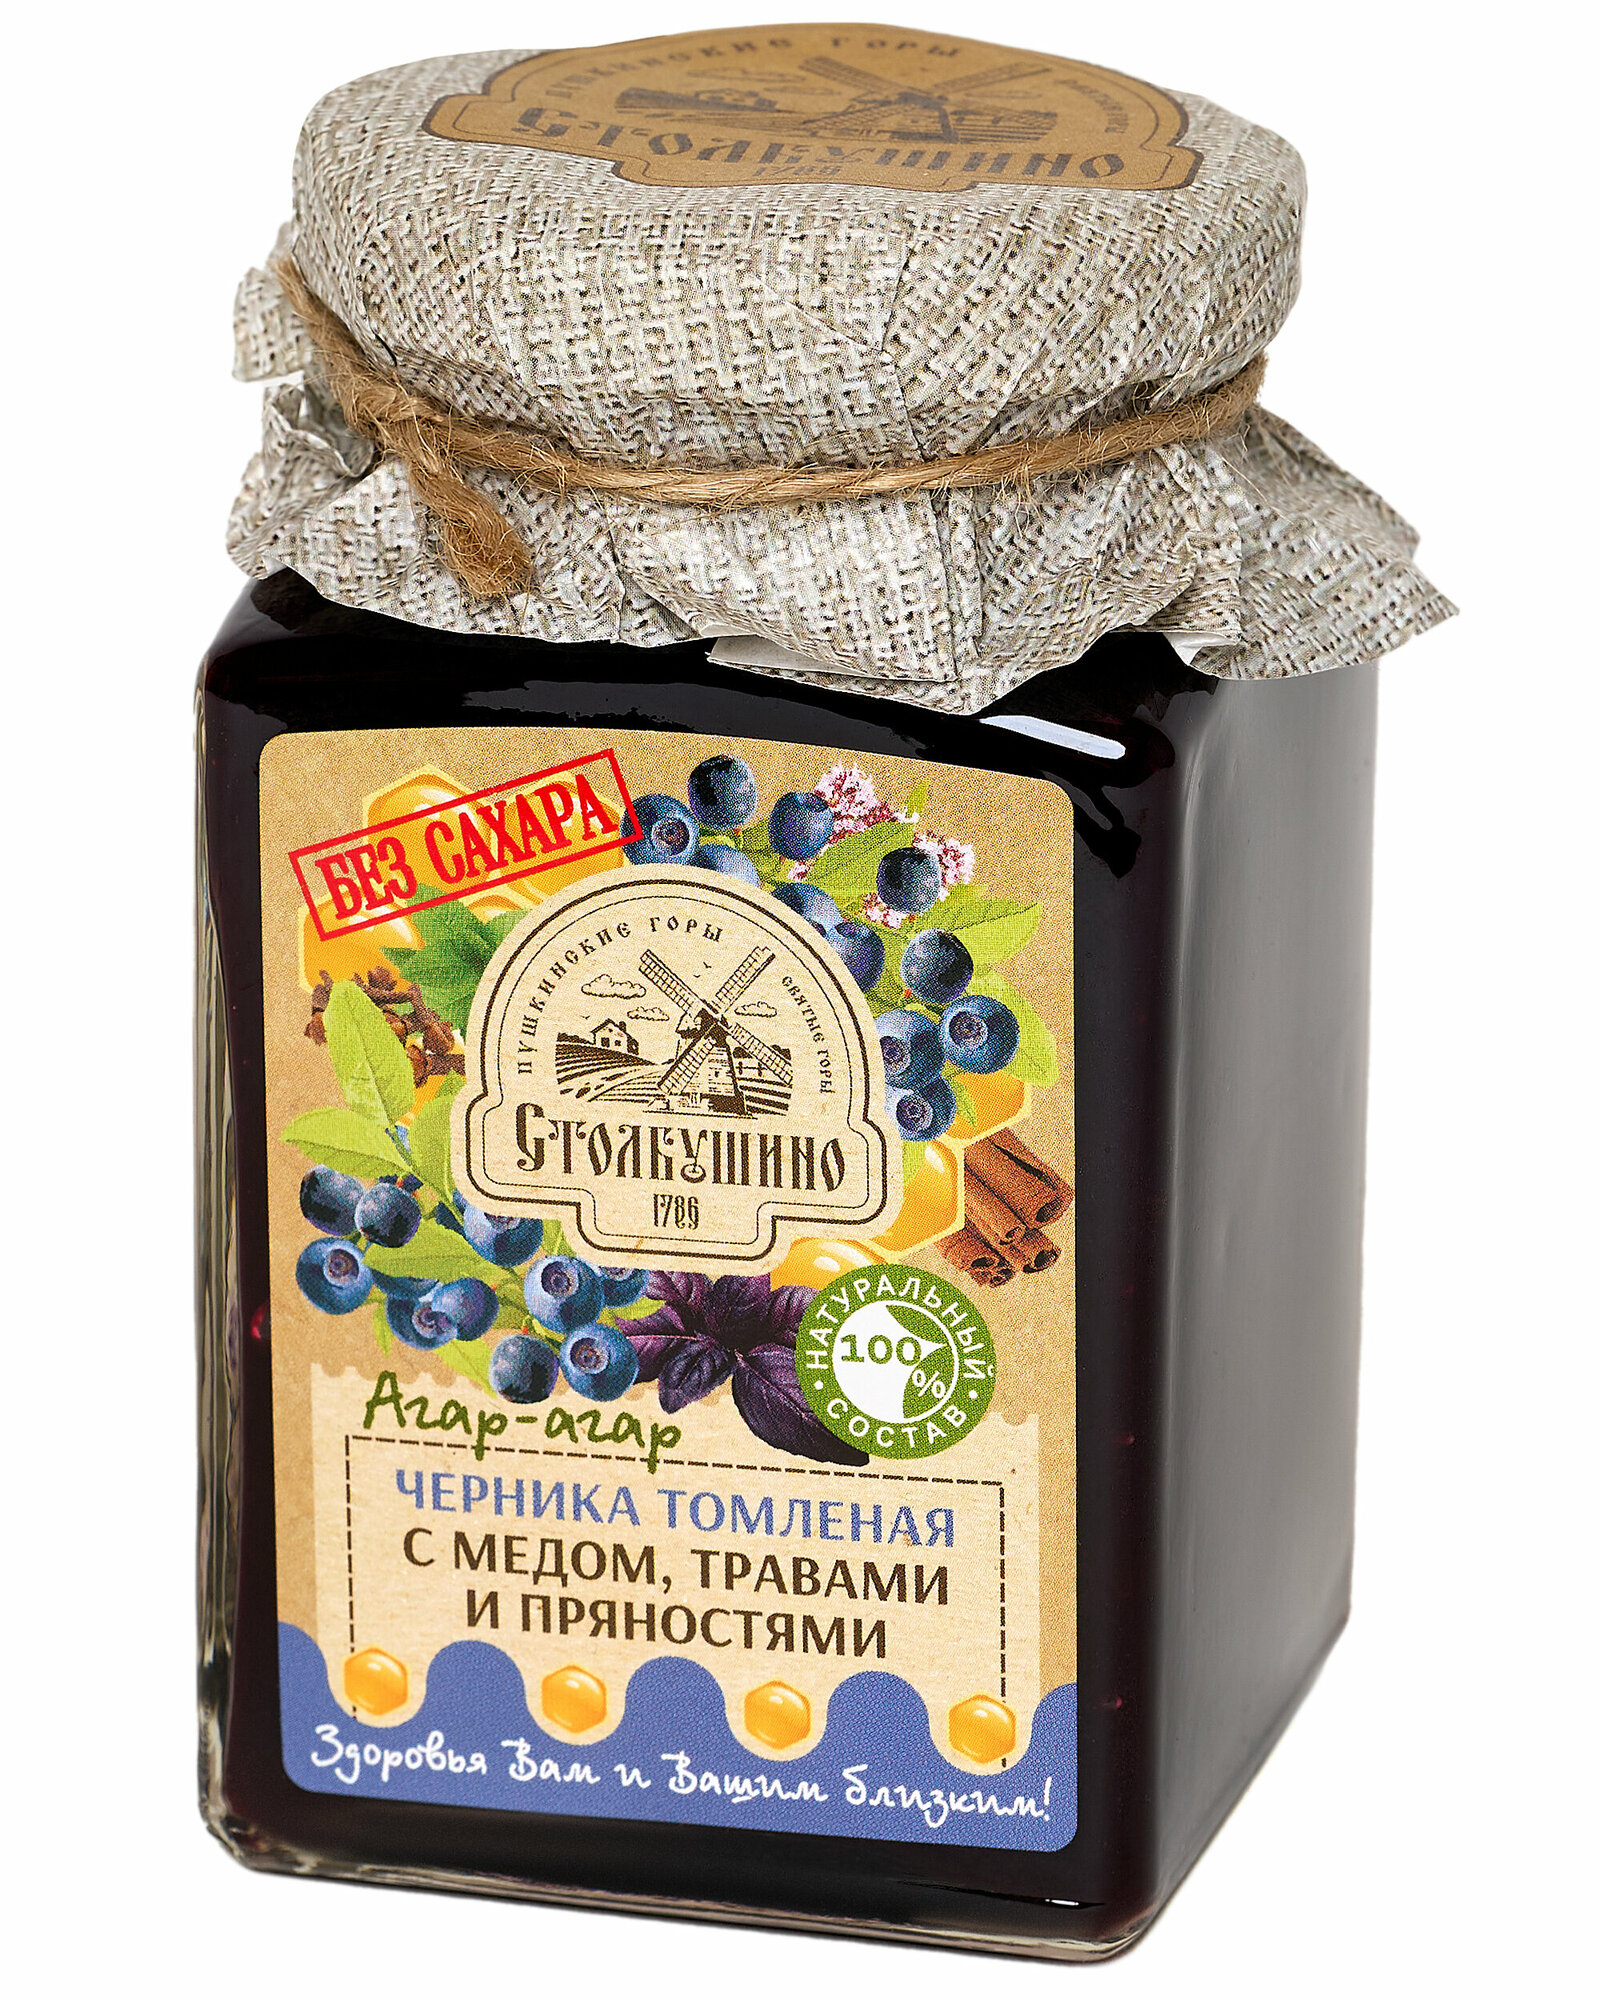 Варенье Черника томленая без сахара с медом, агар-агаром, травами и пряностями Столбушино 250 гр